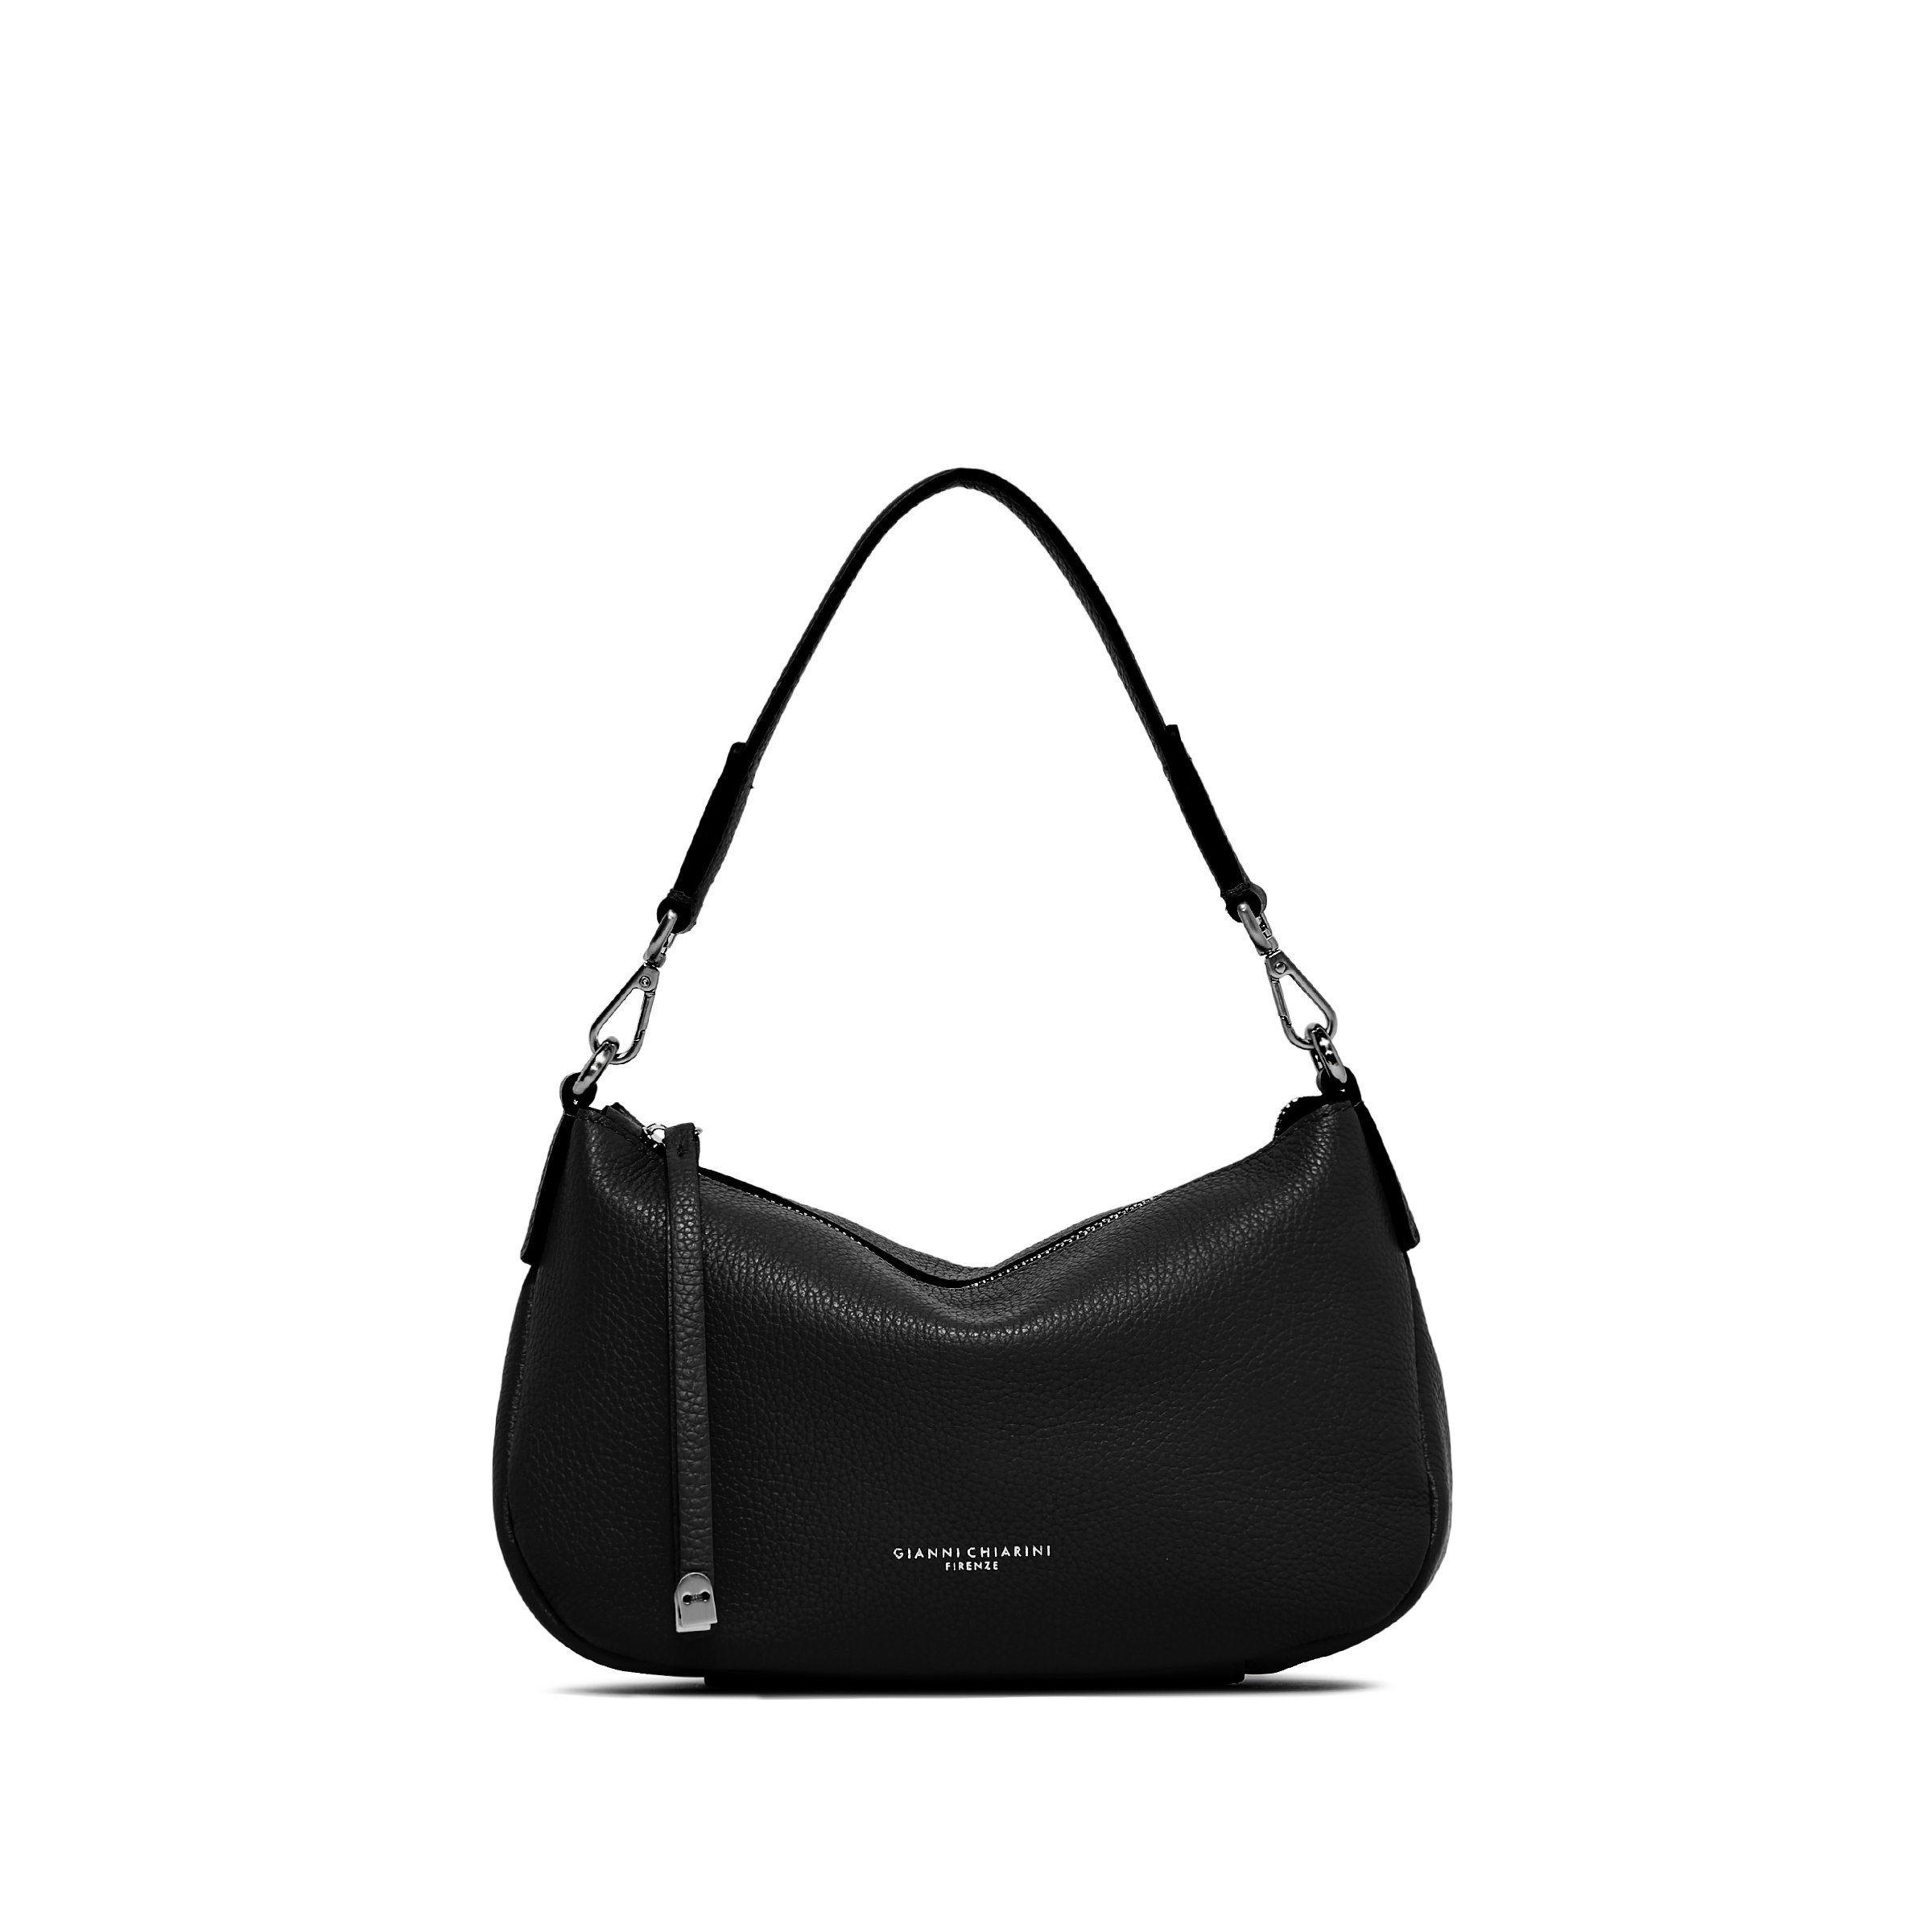 Gianni Chiarini - Nadia Leather bag, Black, large image number 0